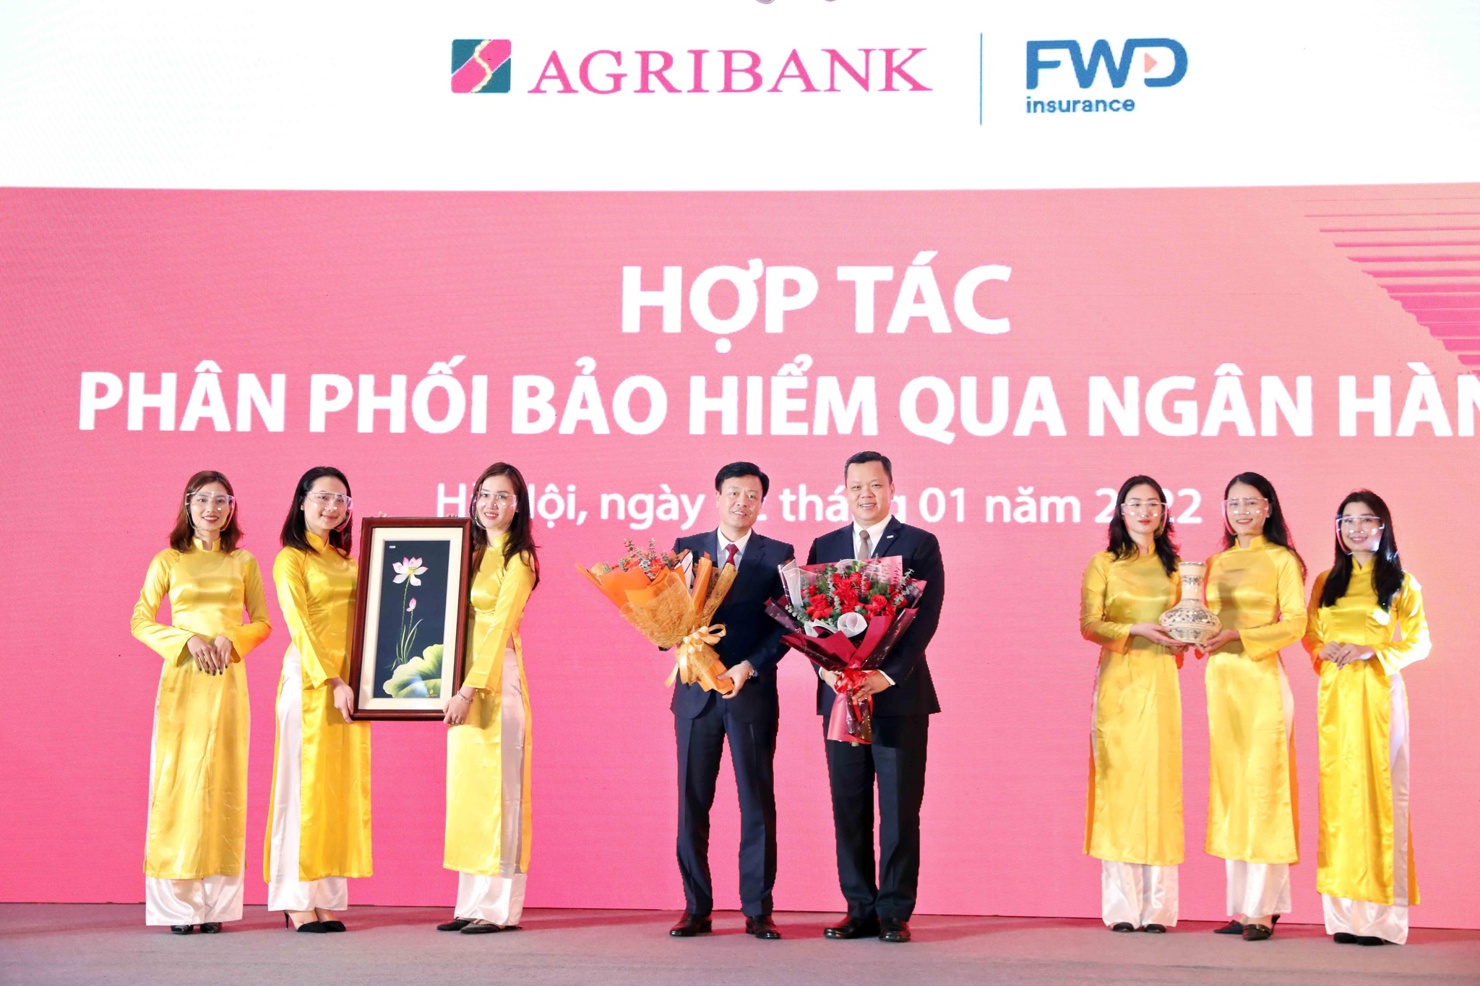 FWD Việt Nam hợp tác phân phối bảo hiểm qua ngân hàng Agribank.